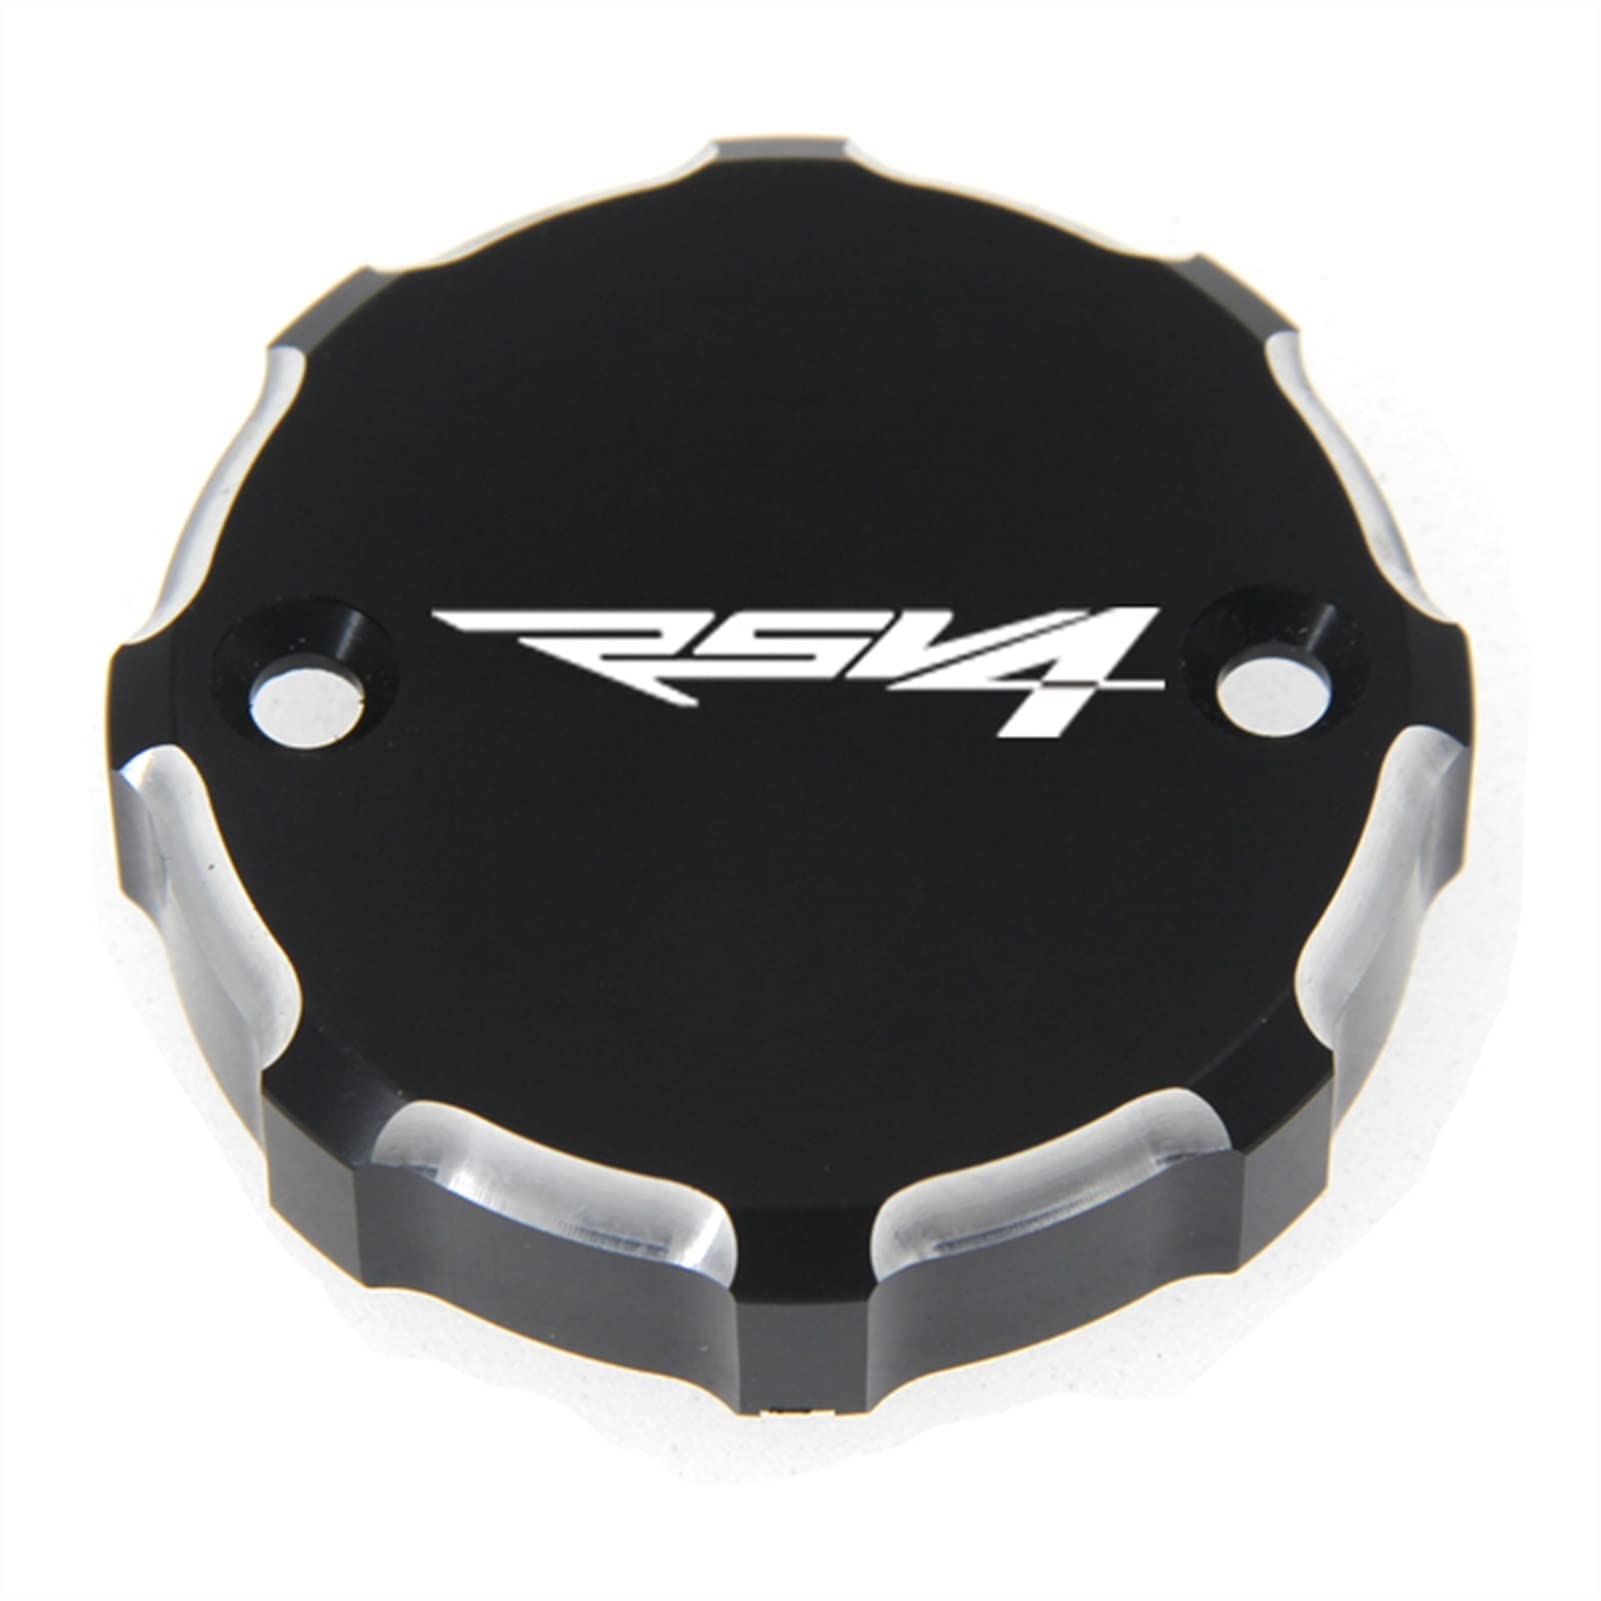 Für Aprilia RSV4 2009-2014 Motorrad Vorderrad Bremsflüssigkeitsbehälter Abdeckkappe (Color : Black)